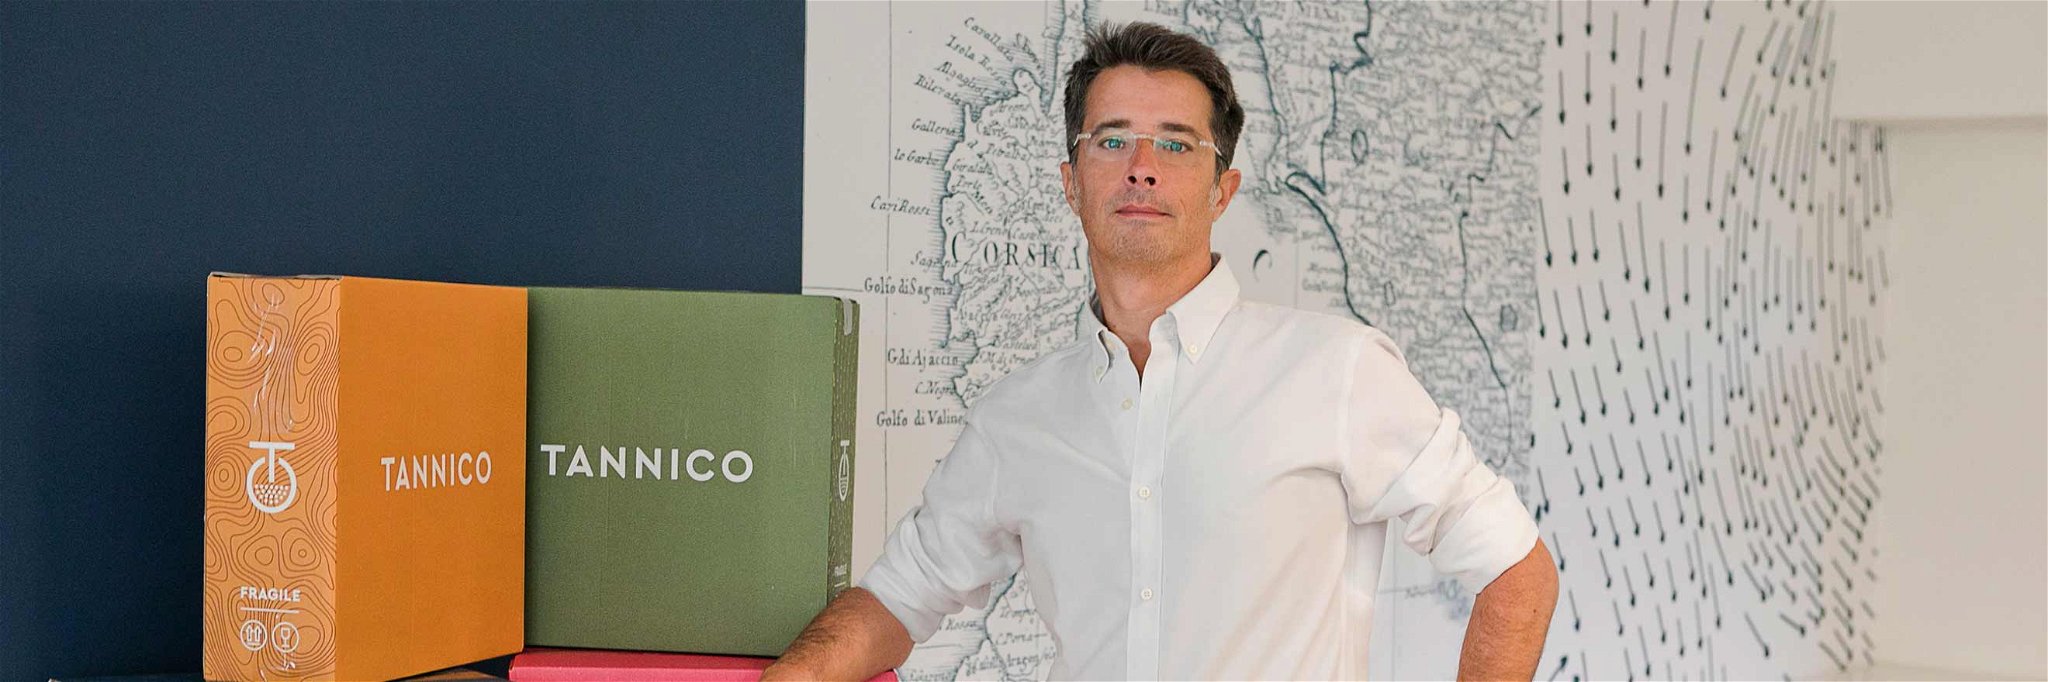 Tannico-CEO Marco Magnocavallo